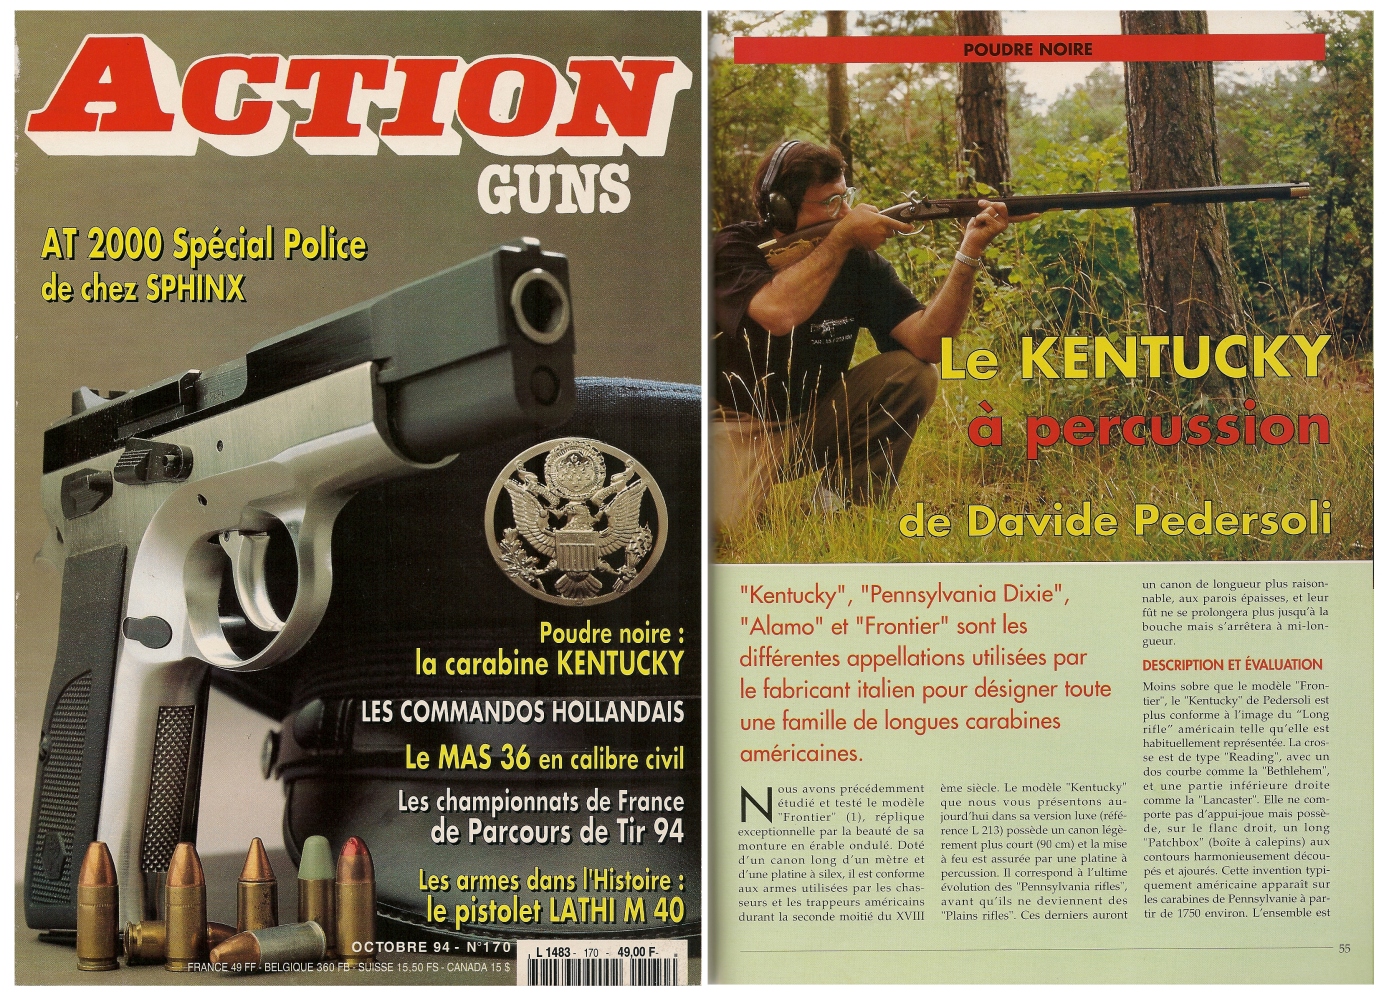 Le banc d’essai de la réplique de carabine à percussion « Kentucky » a été publié sur 5 pages dans le magazine Action Guns n° 170 (octobre 1994).